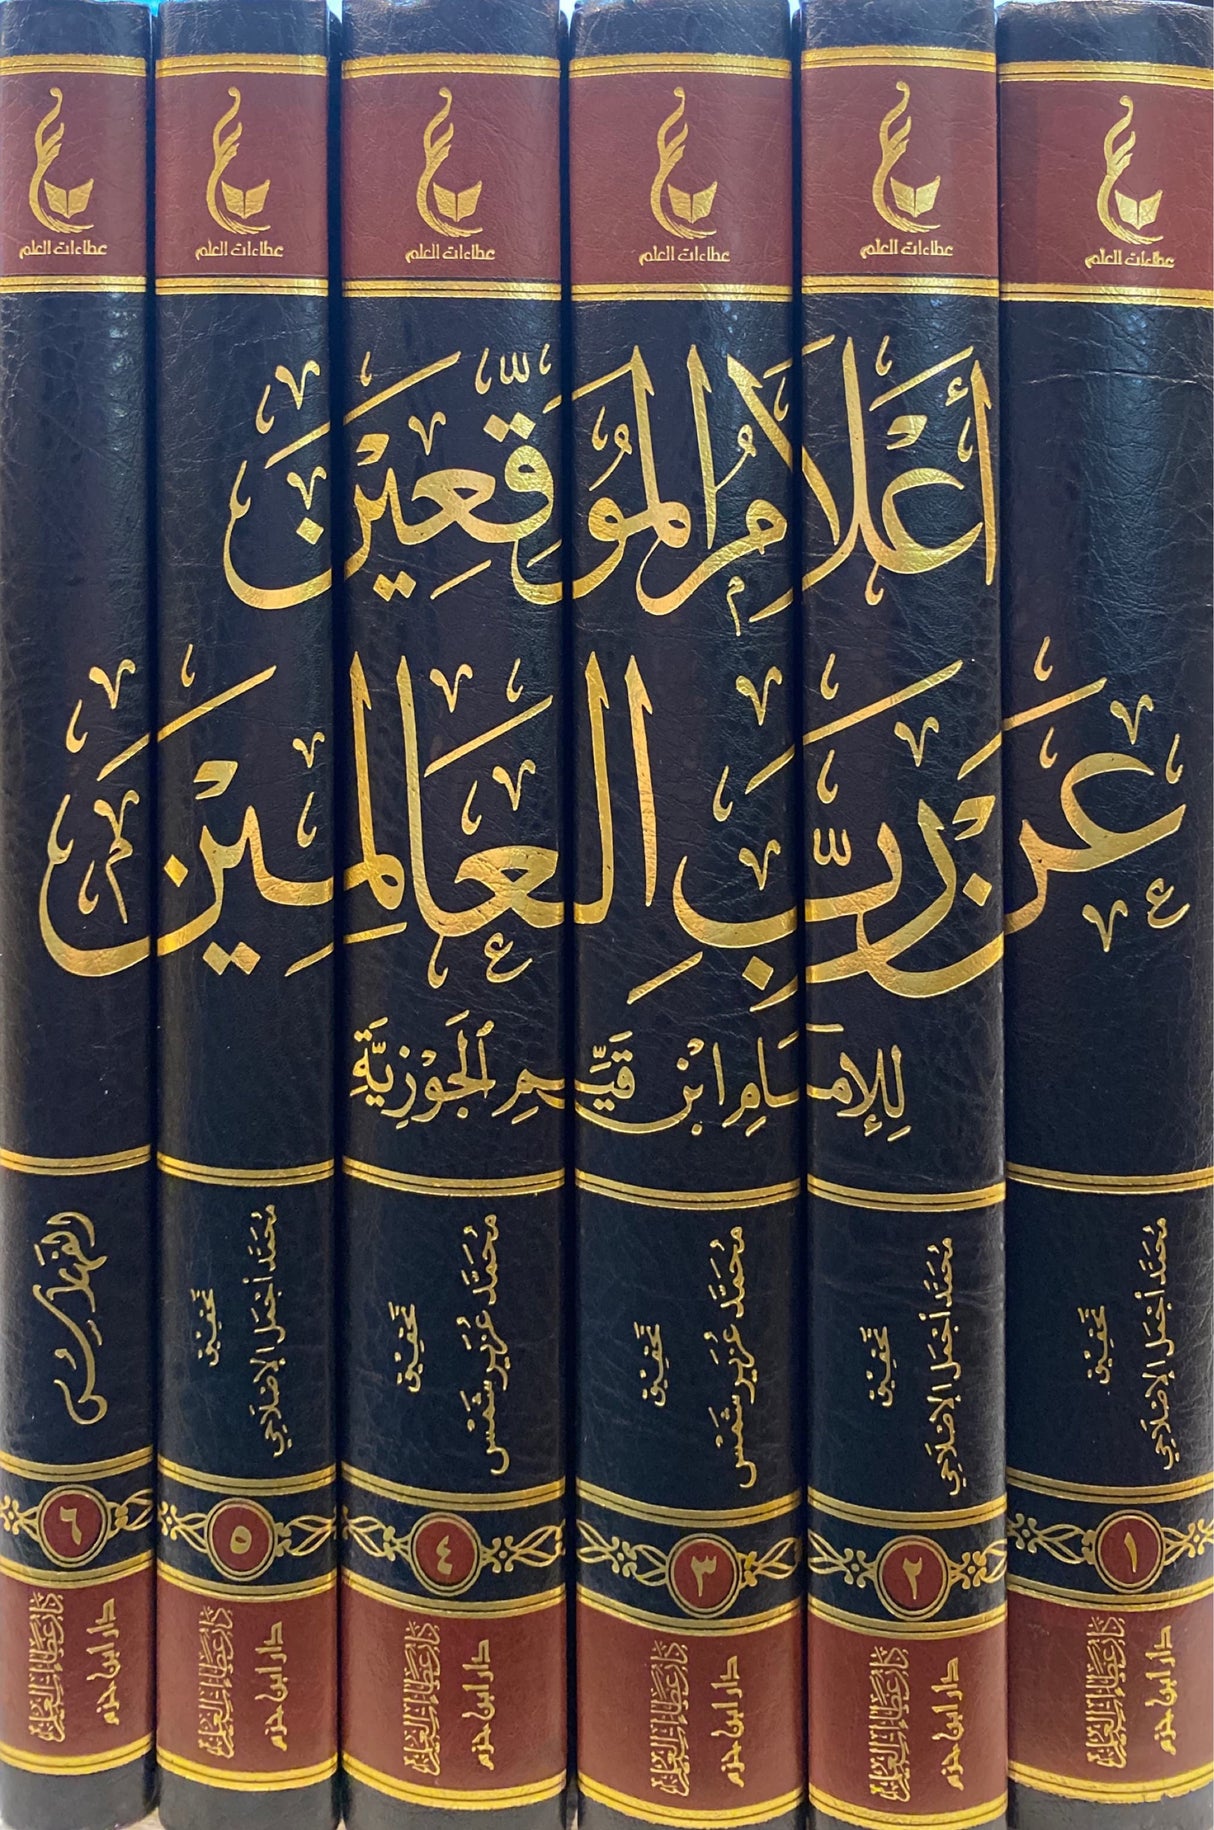 اعلام الموقعين عن رب العالمين Ilaamul Muwaqieen (6 Volume Set)(Hazm)